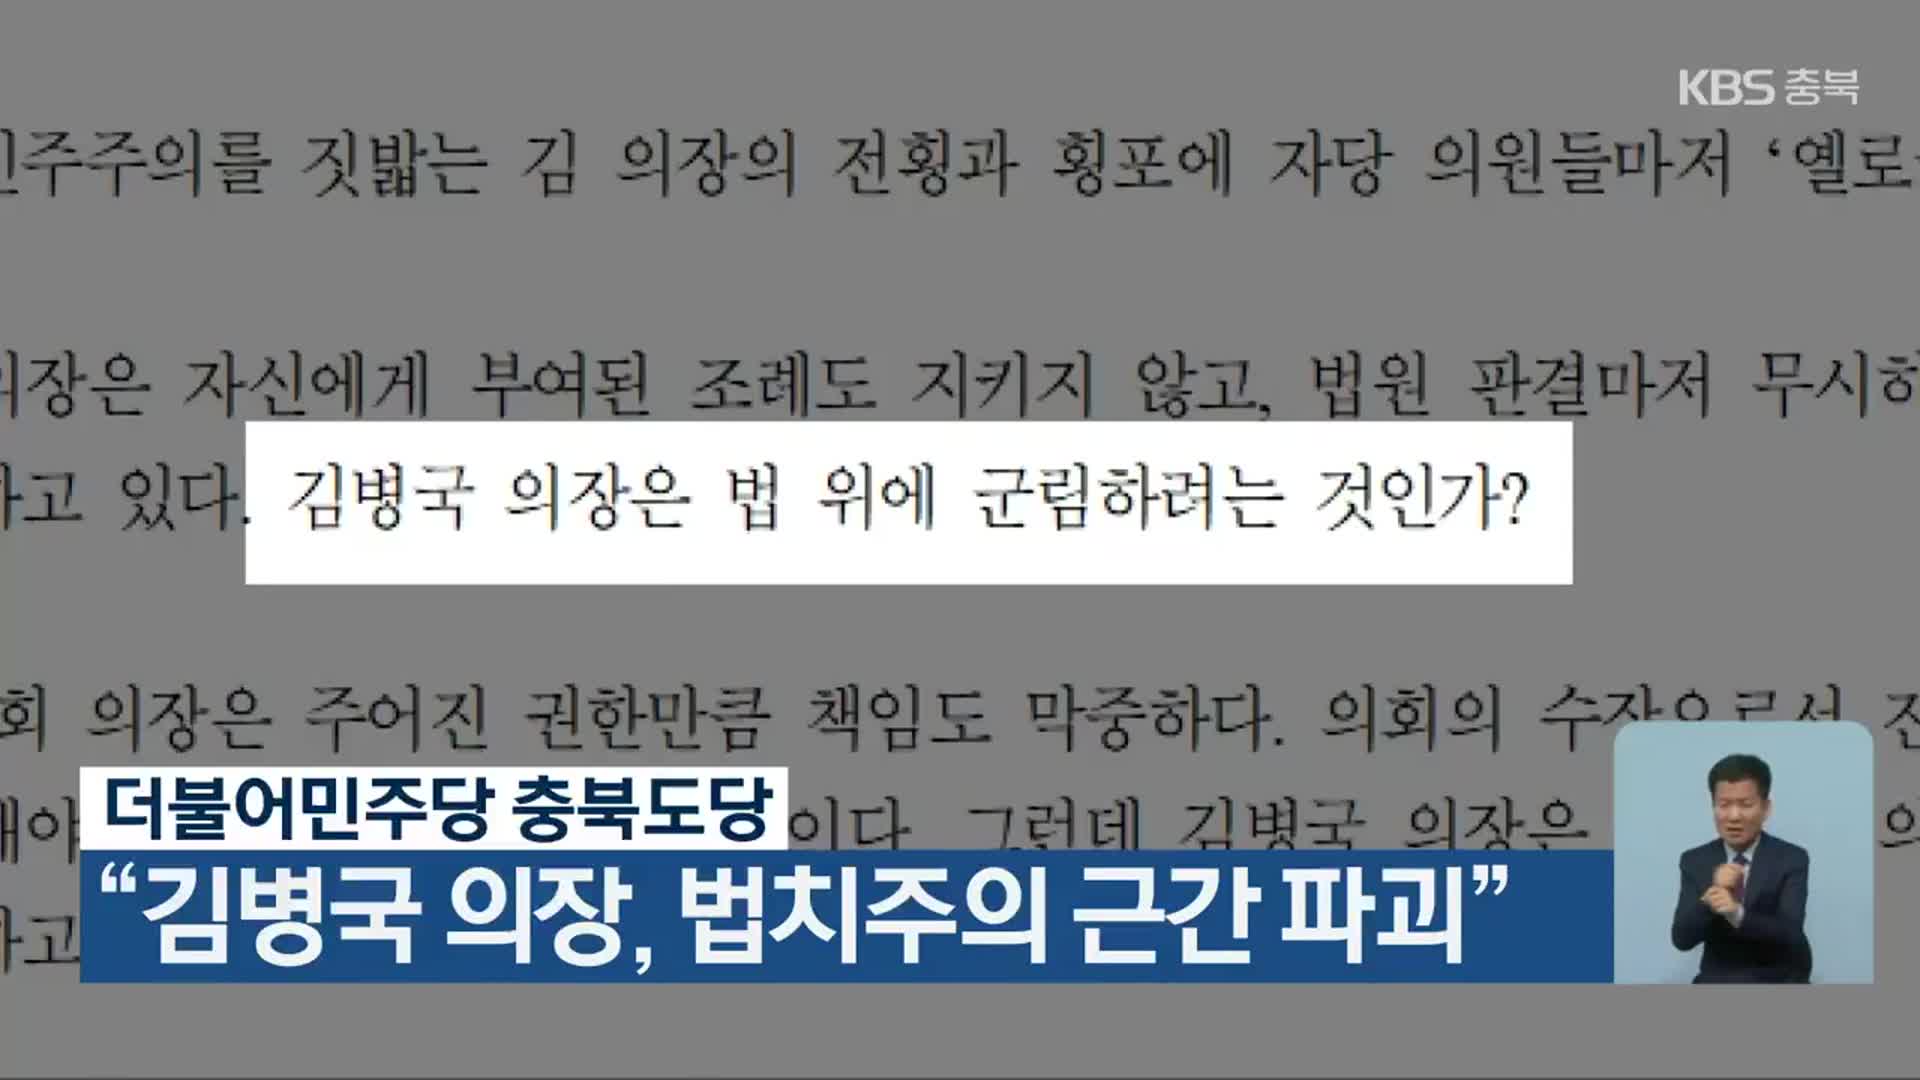 더불어민주당 충북도당, “김병국 의장, 법치주의 근간 파괴”